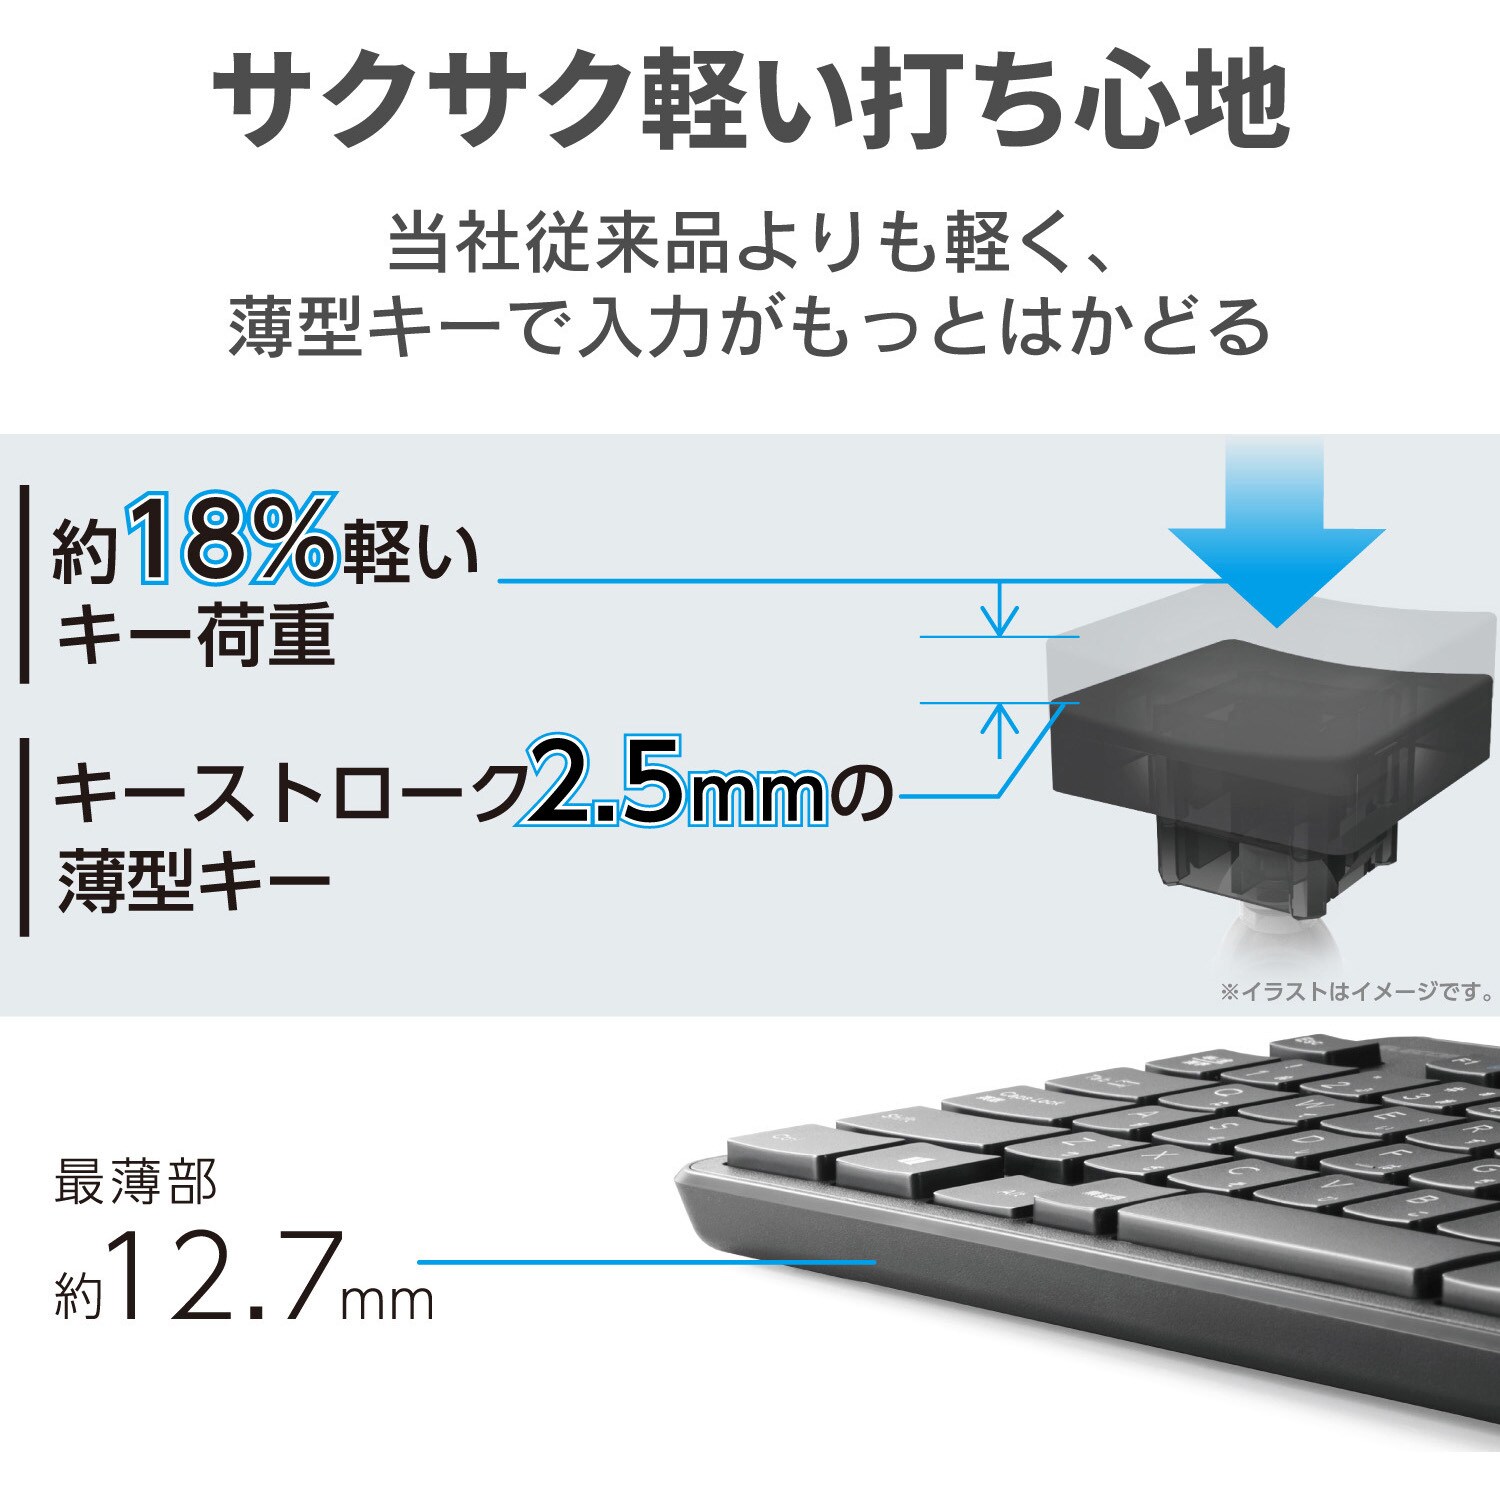 Tk Fdm109mbk ワイヤレスキーボード 無線 メンブレン コンパクトサイズ ブラック エレコム マウス 光学式センサー方式 Tk Fdm109mbk 通販モノタロウ